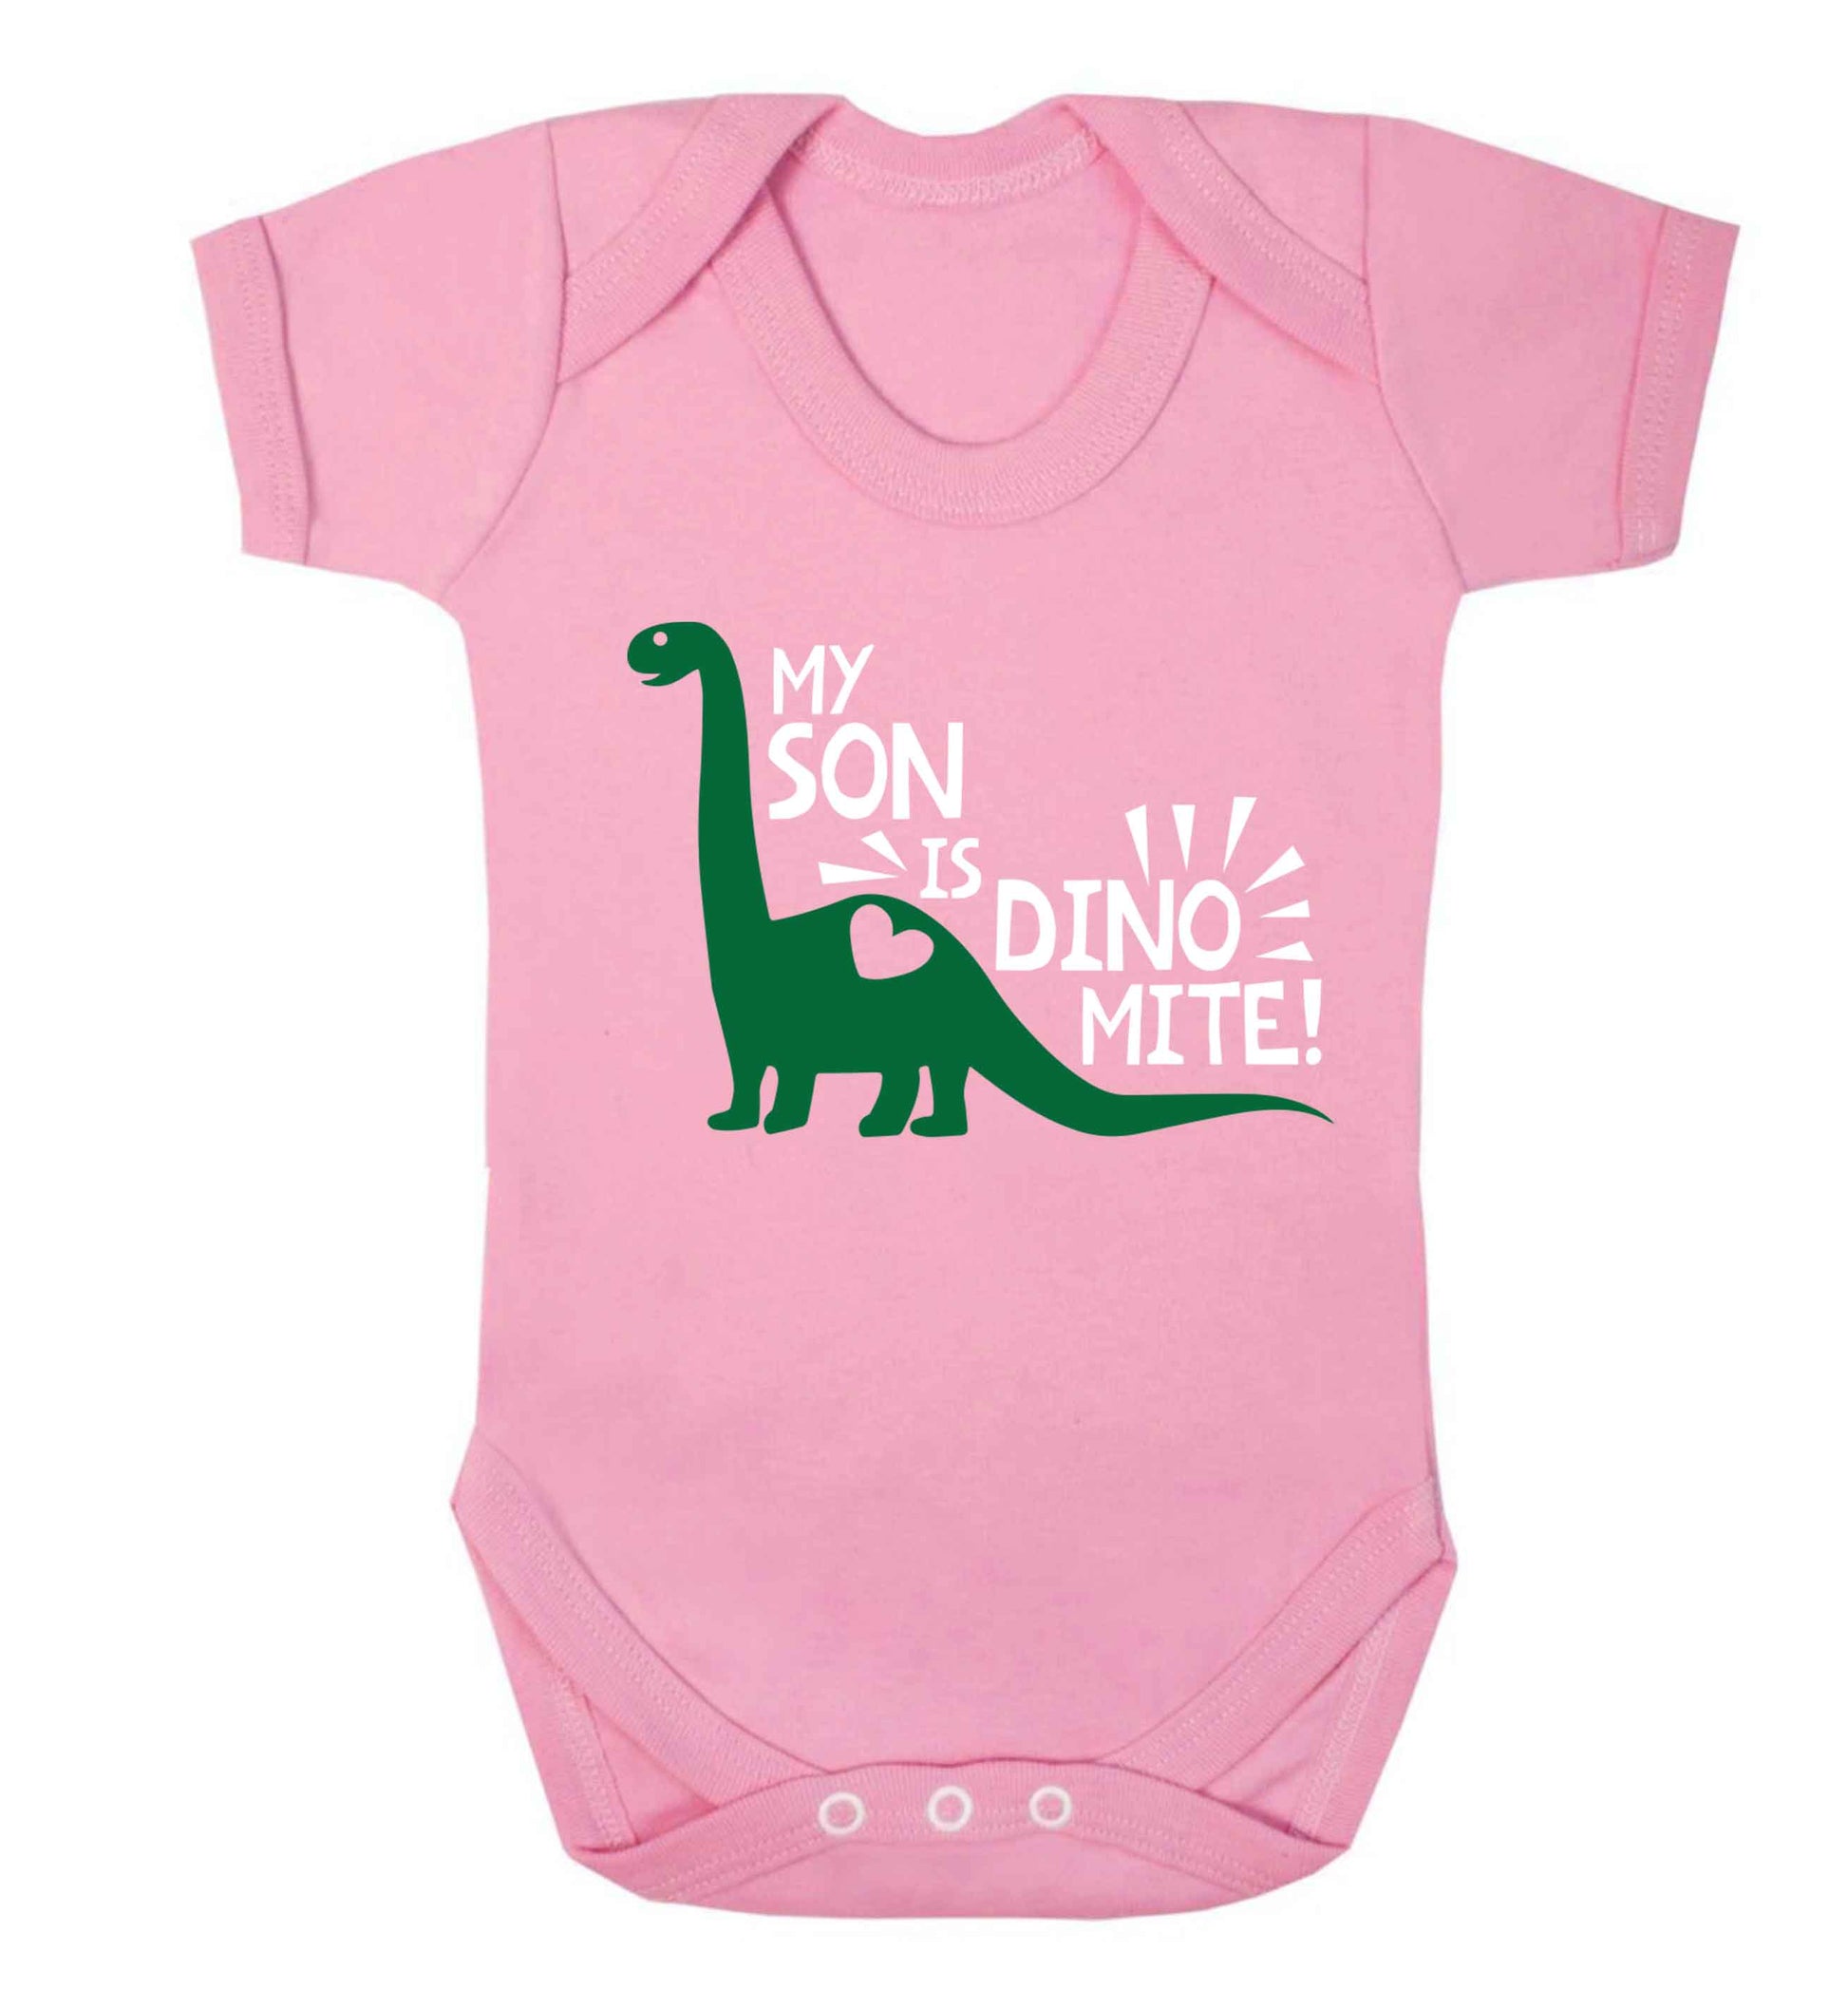 My son is dinomite! Baby Vest pale pink 18-24 months